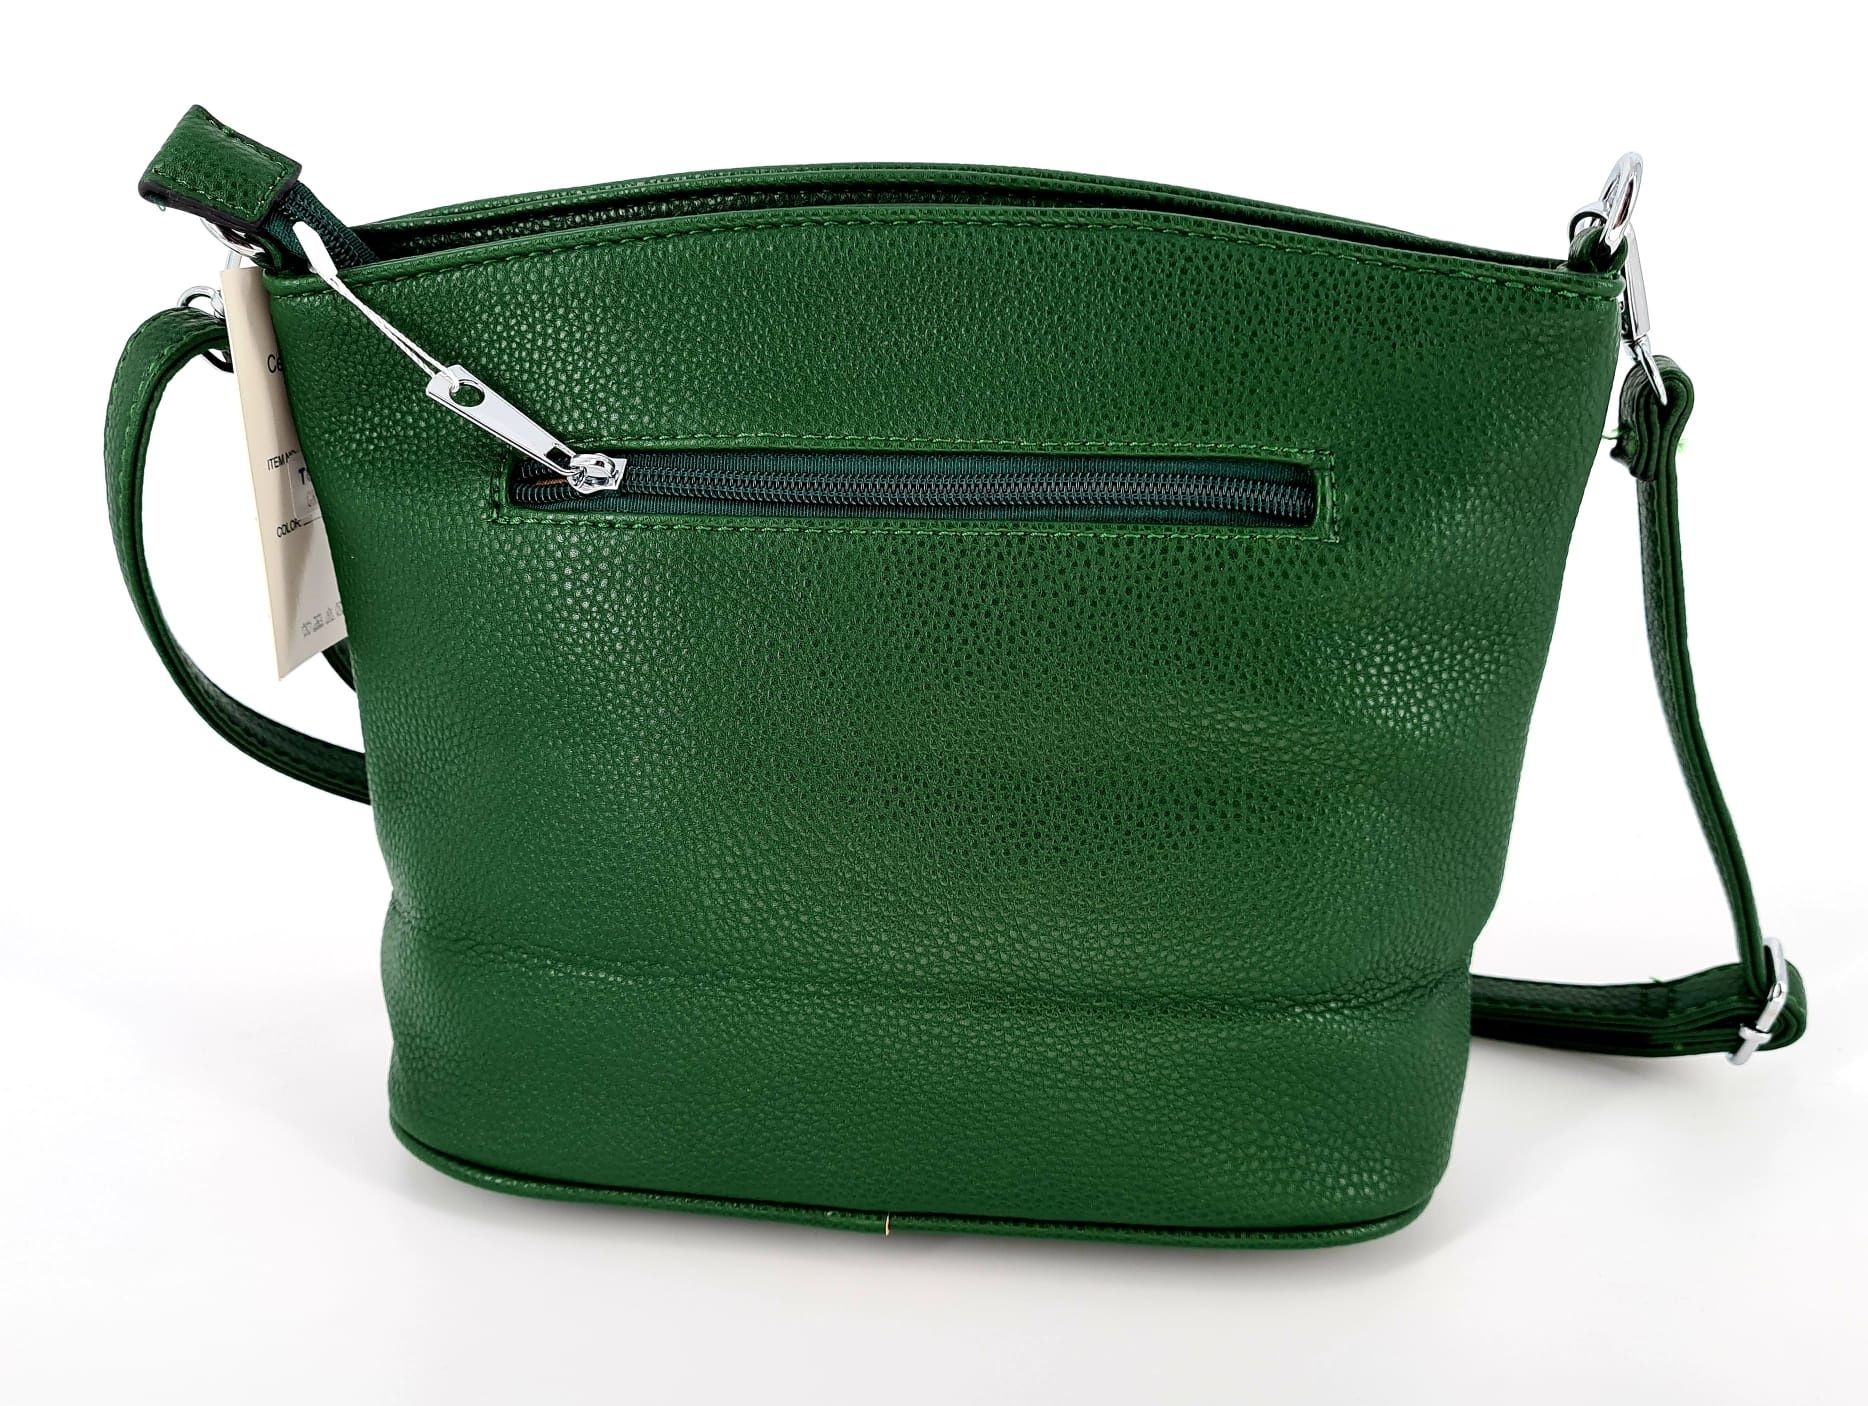 Nowa modna torebka na ramię marki Marco Contti zielona ciemna